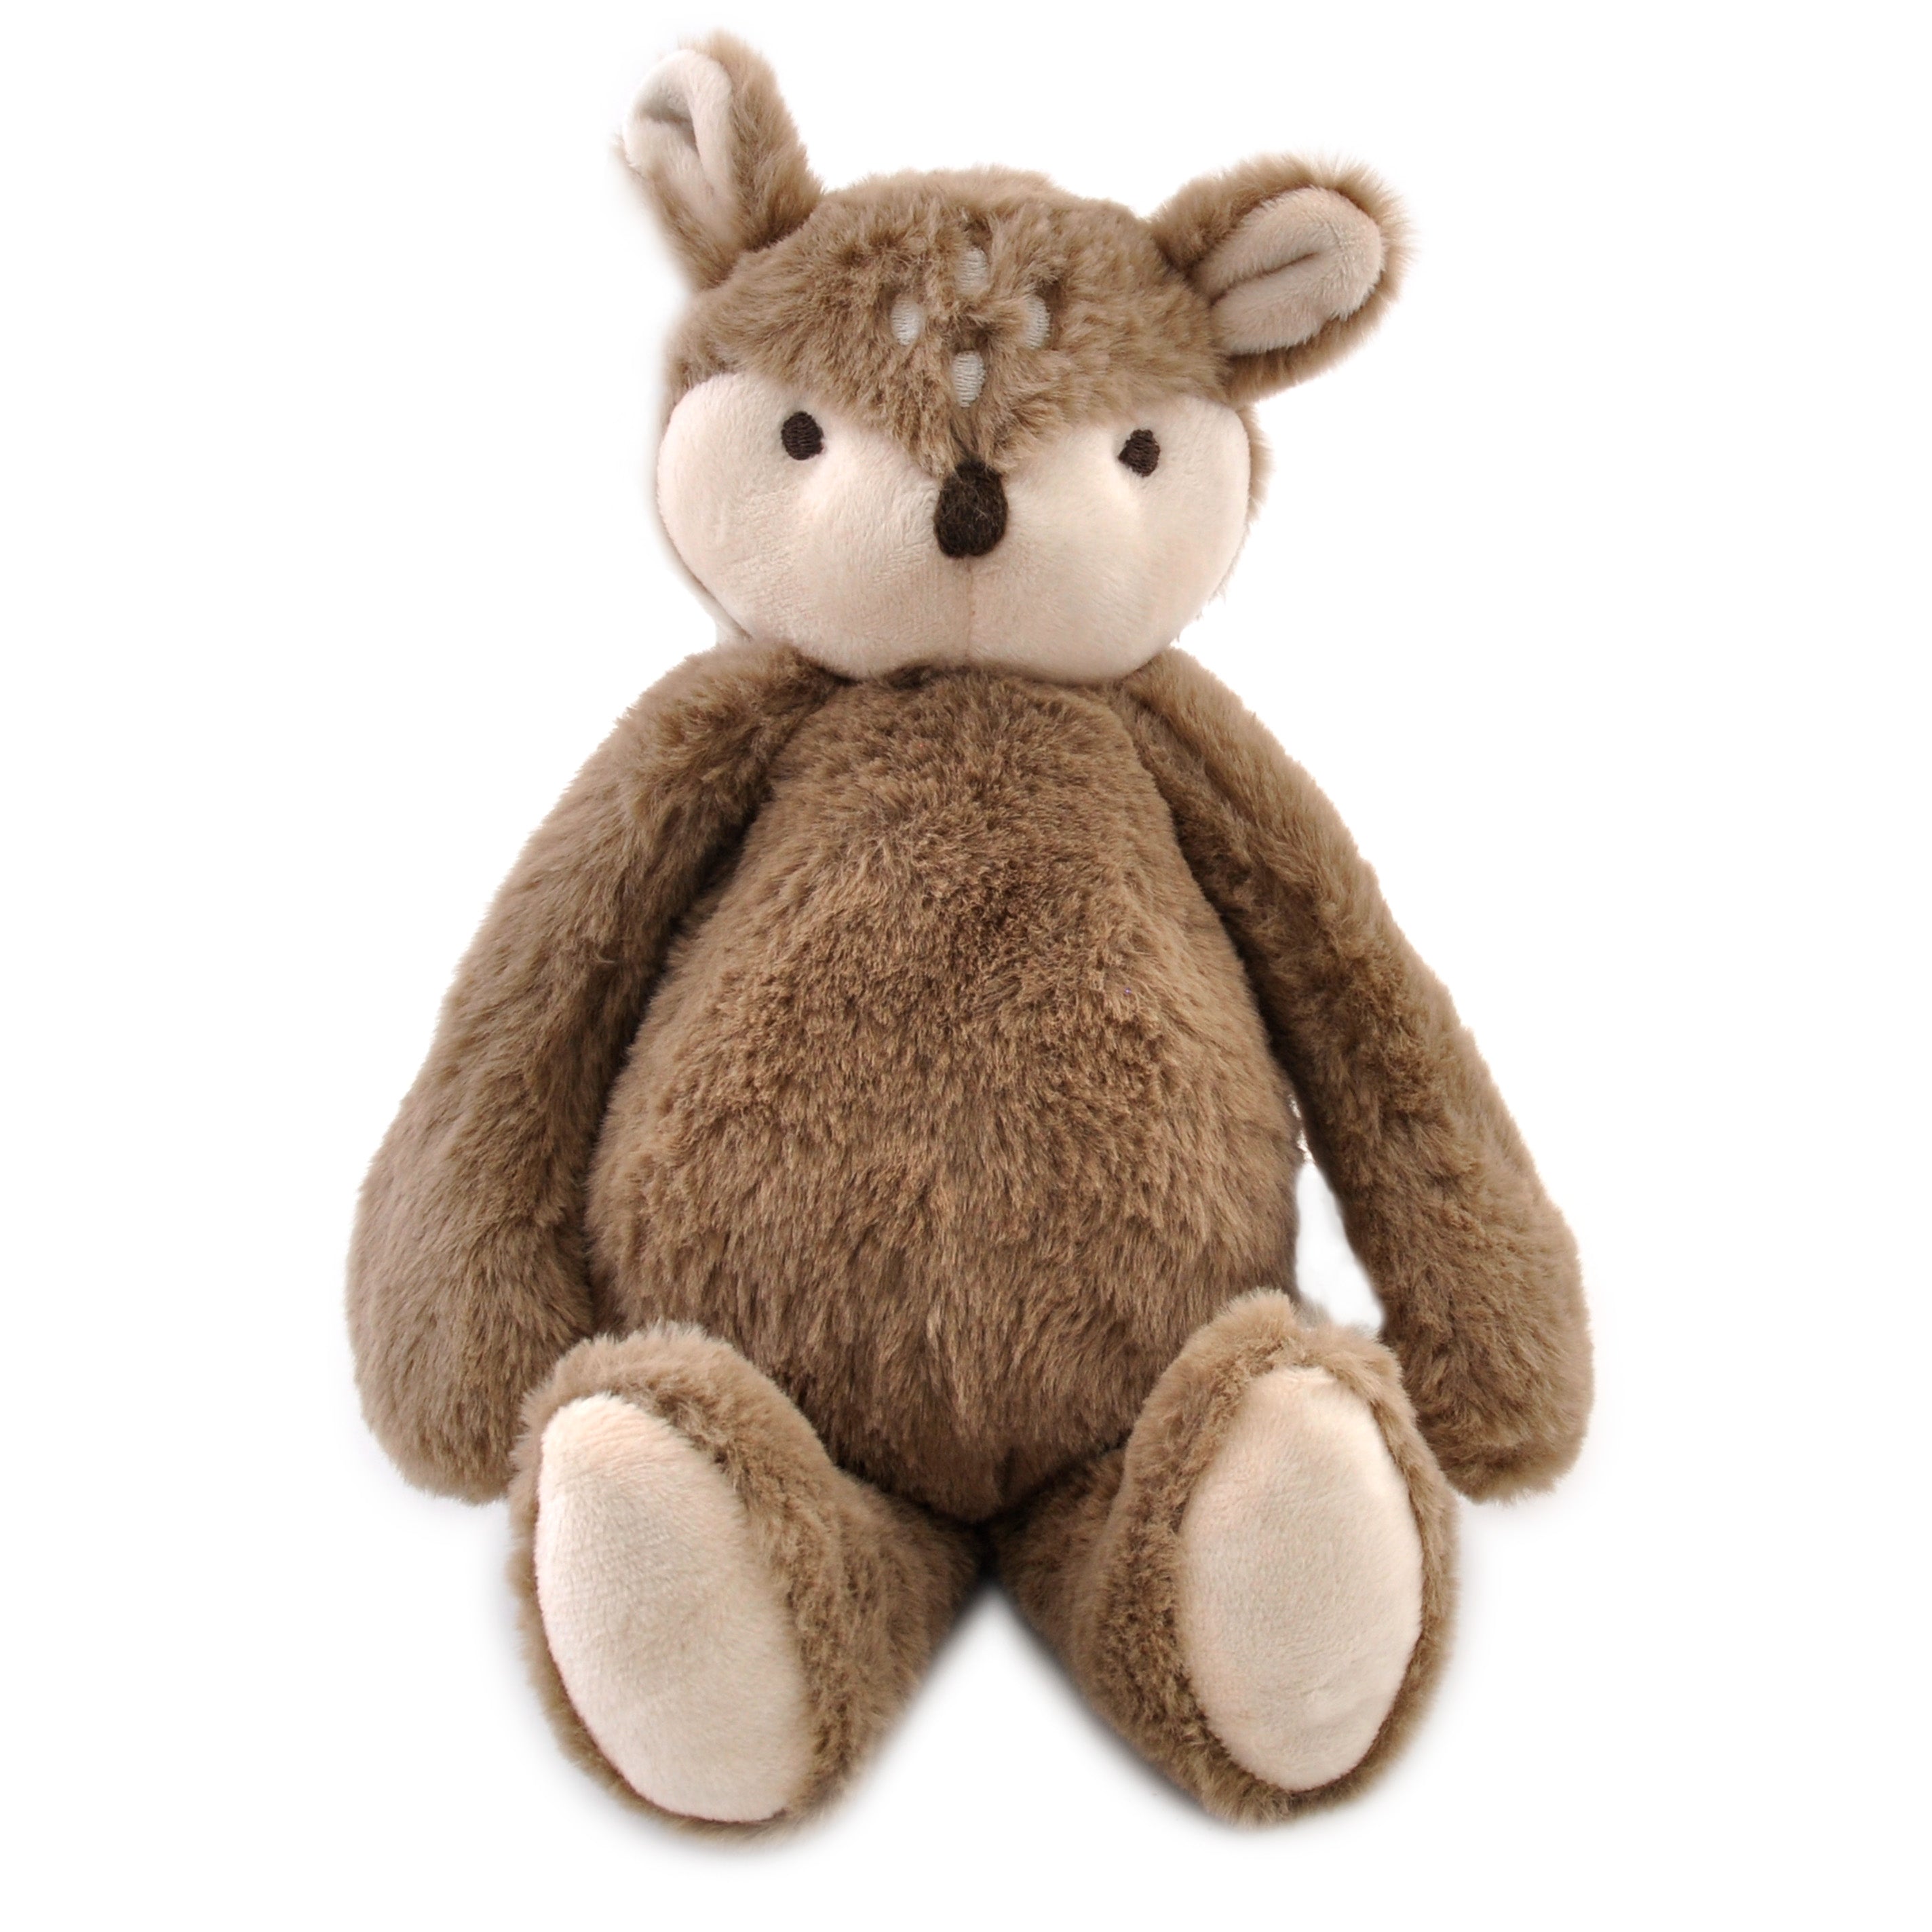 Baby Plush Toy - Deer